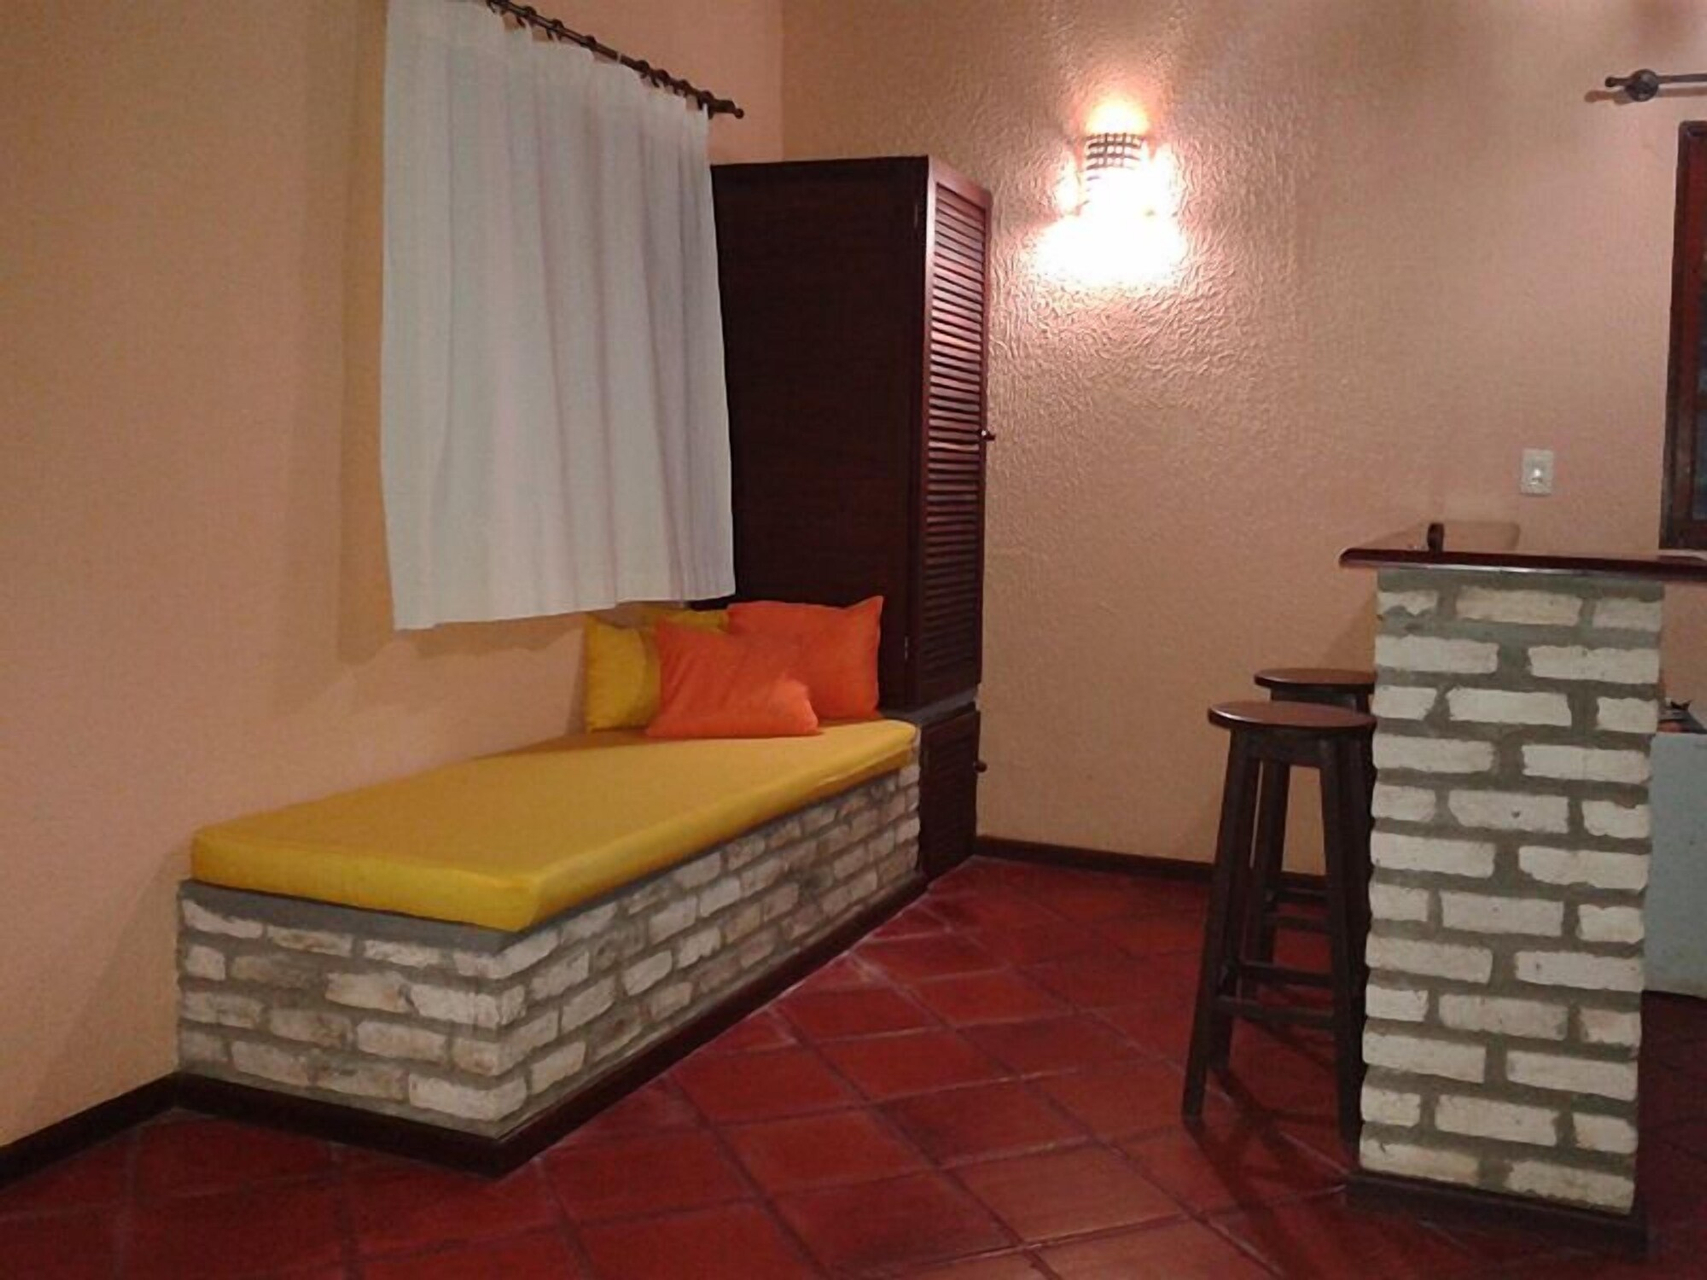 Bedroom 2, Aquarela do Brasil Village, Tibau do Sul